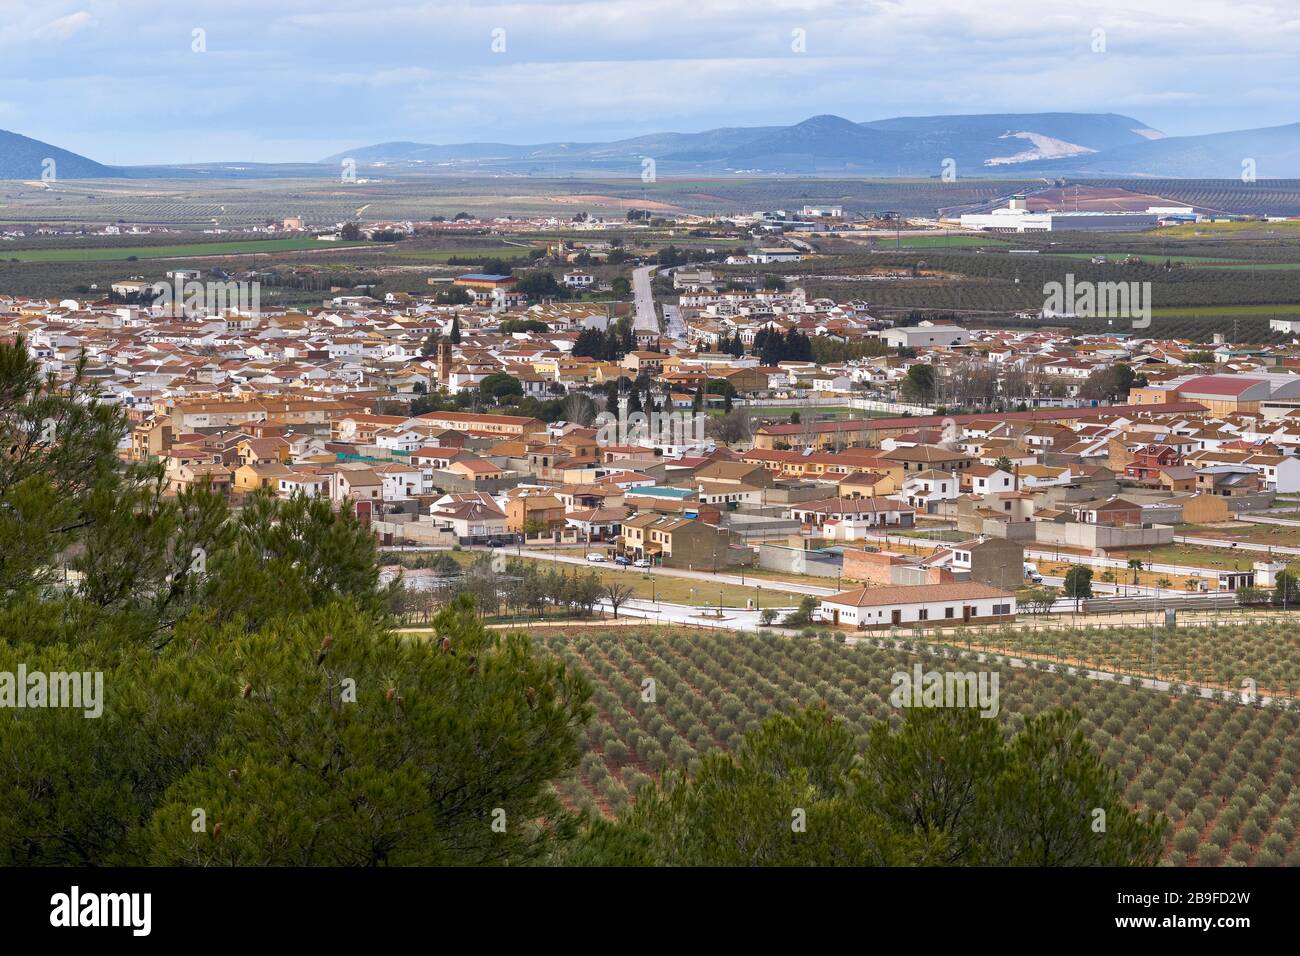 Blick auf die Stadt Humiladero, Region Antequera, Málaga. Spanien Stockfoto